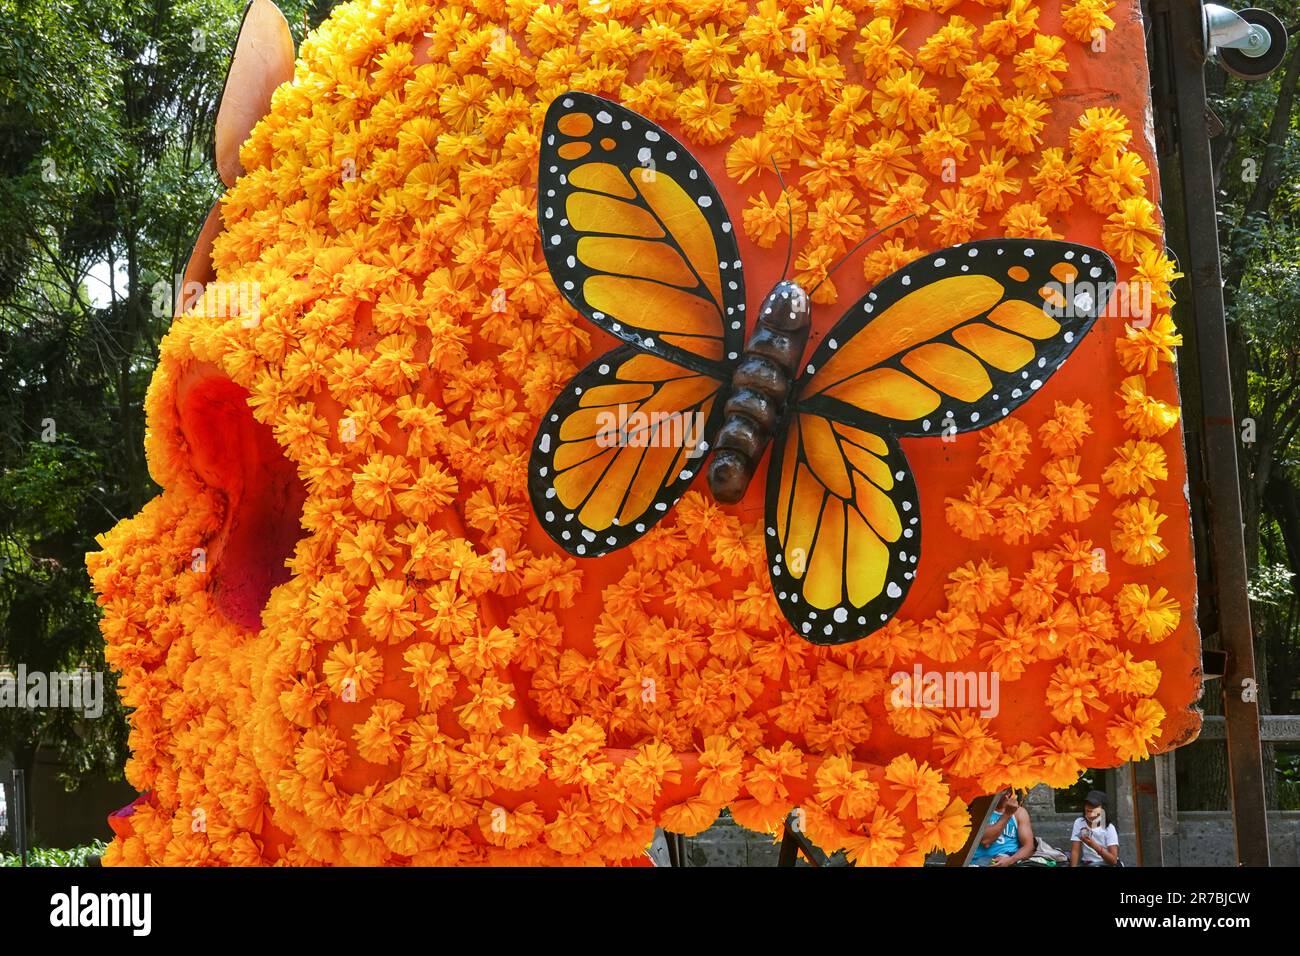 Détail d'un crâne géant recouvert de fleurs Marigold mexicaines et de papillons monarques exposés à l'occasion de la fête du jour des morts au parc de Chapultepec, à 29 octobre 2022, dans la ville de Mexico, au Mexique. Banque D'Images